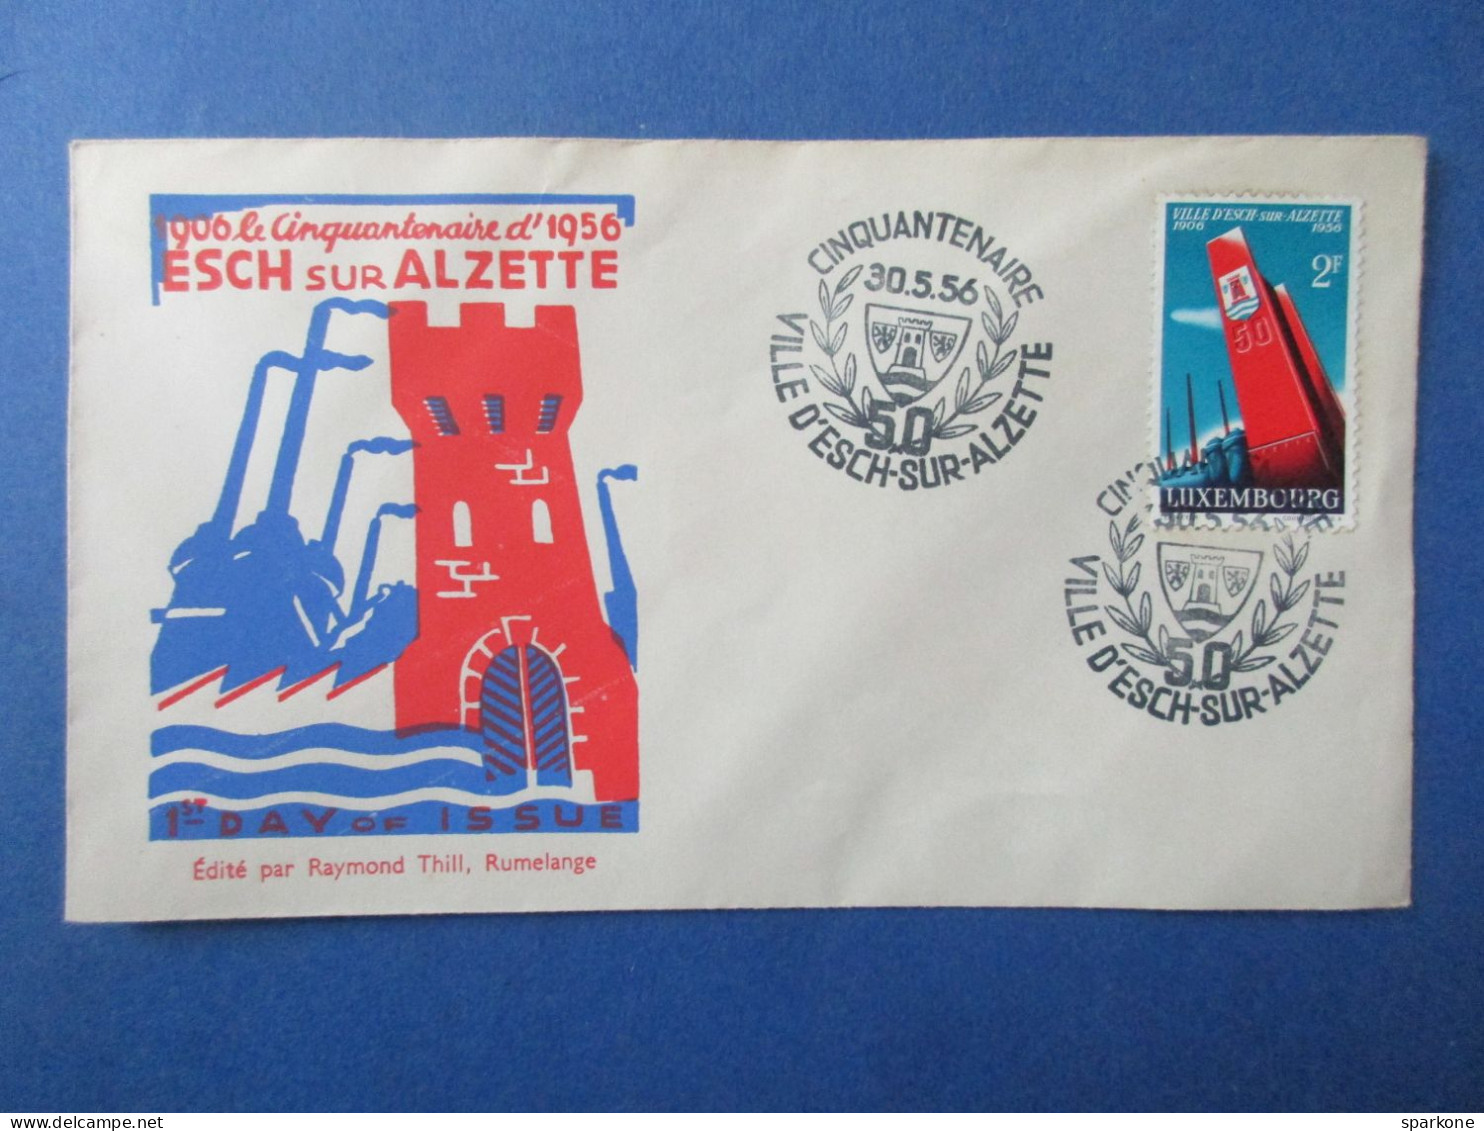 Marcophilie - Enveloppe - Luxembourg - Le Cinquantenaire Esch Sur Alzette - 1956 - FDC